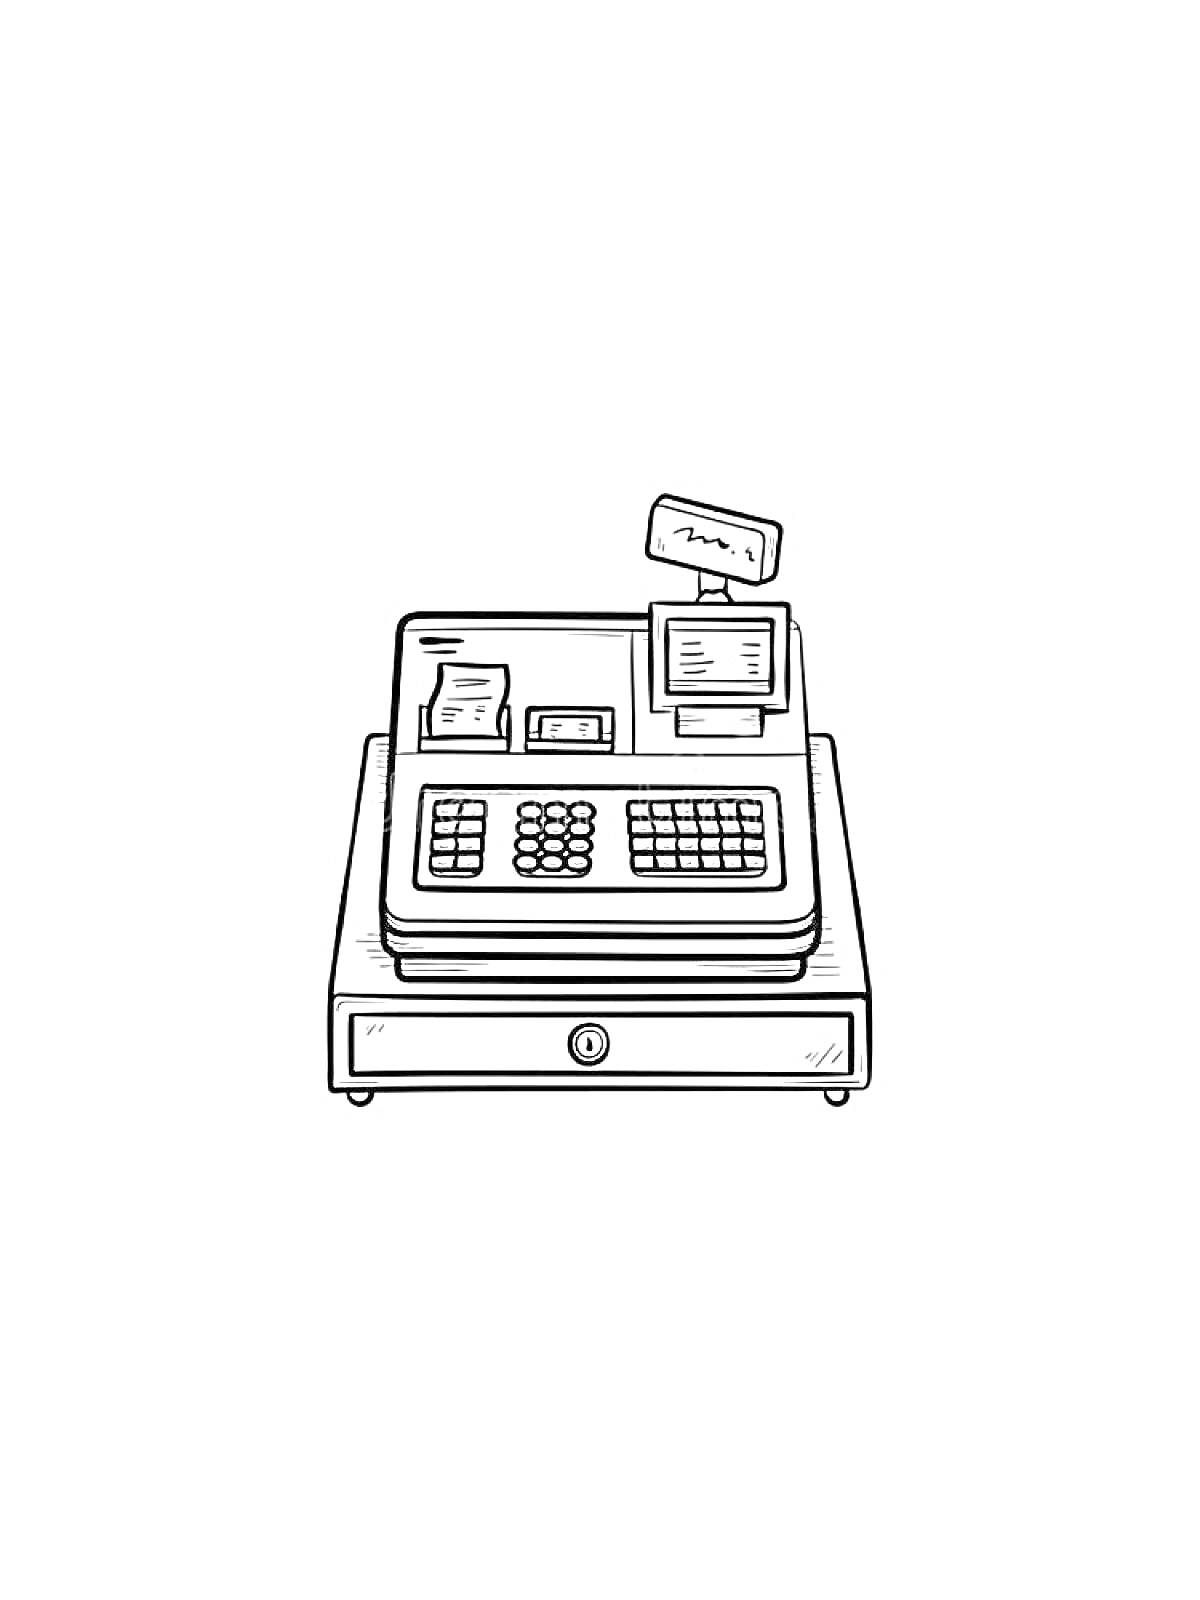 Кассовый аппарат с клавиатурой, дисплеем, квитанцией и кассовым ящиком